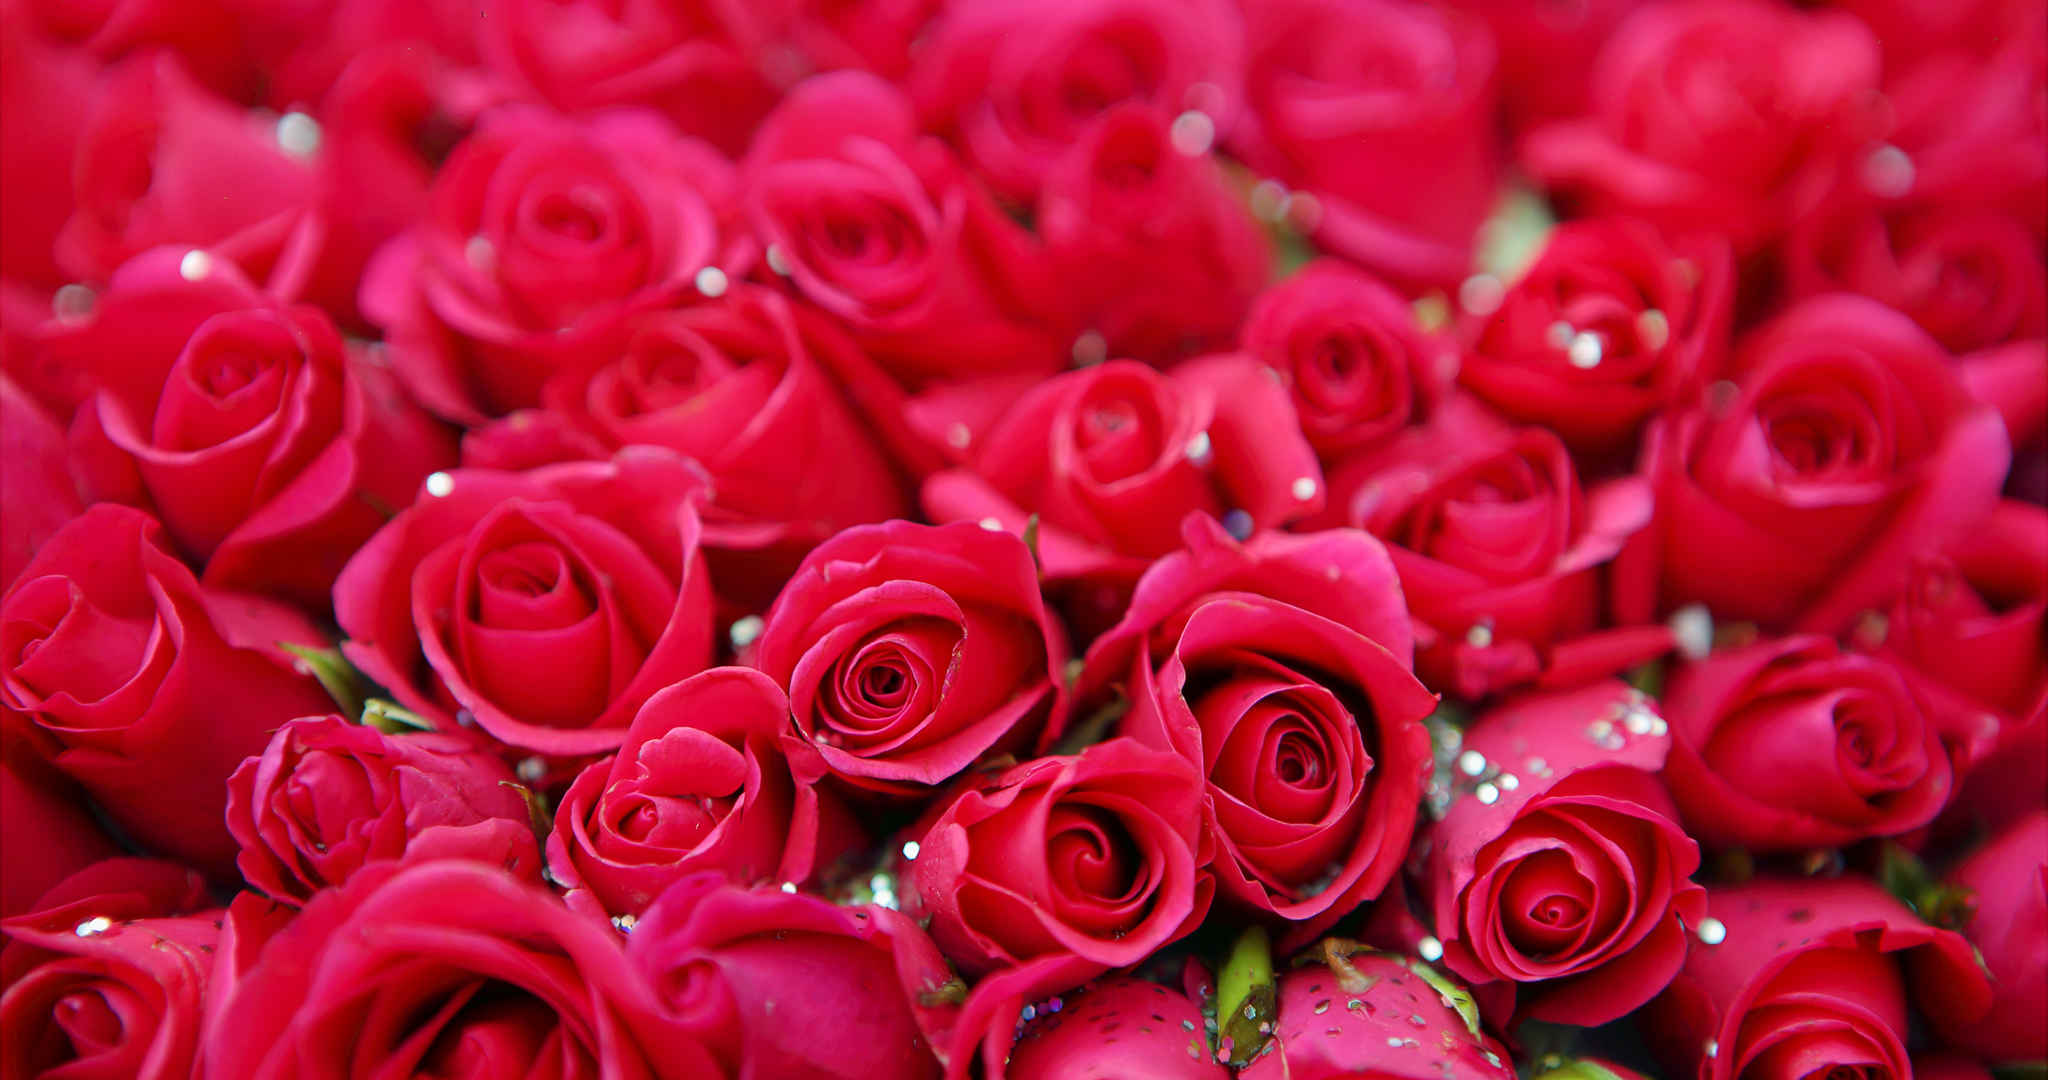 色彩红色艳丽并且花朵绽开的玫瑰花桌面壁纸-